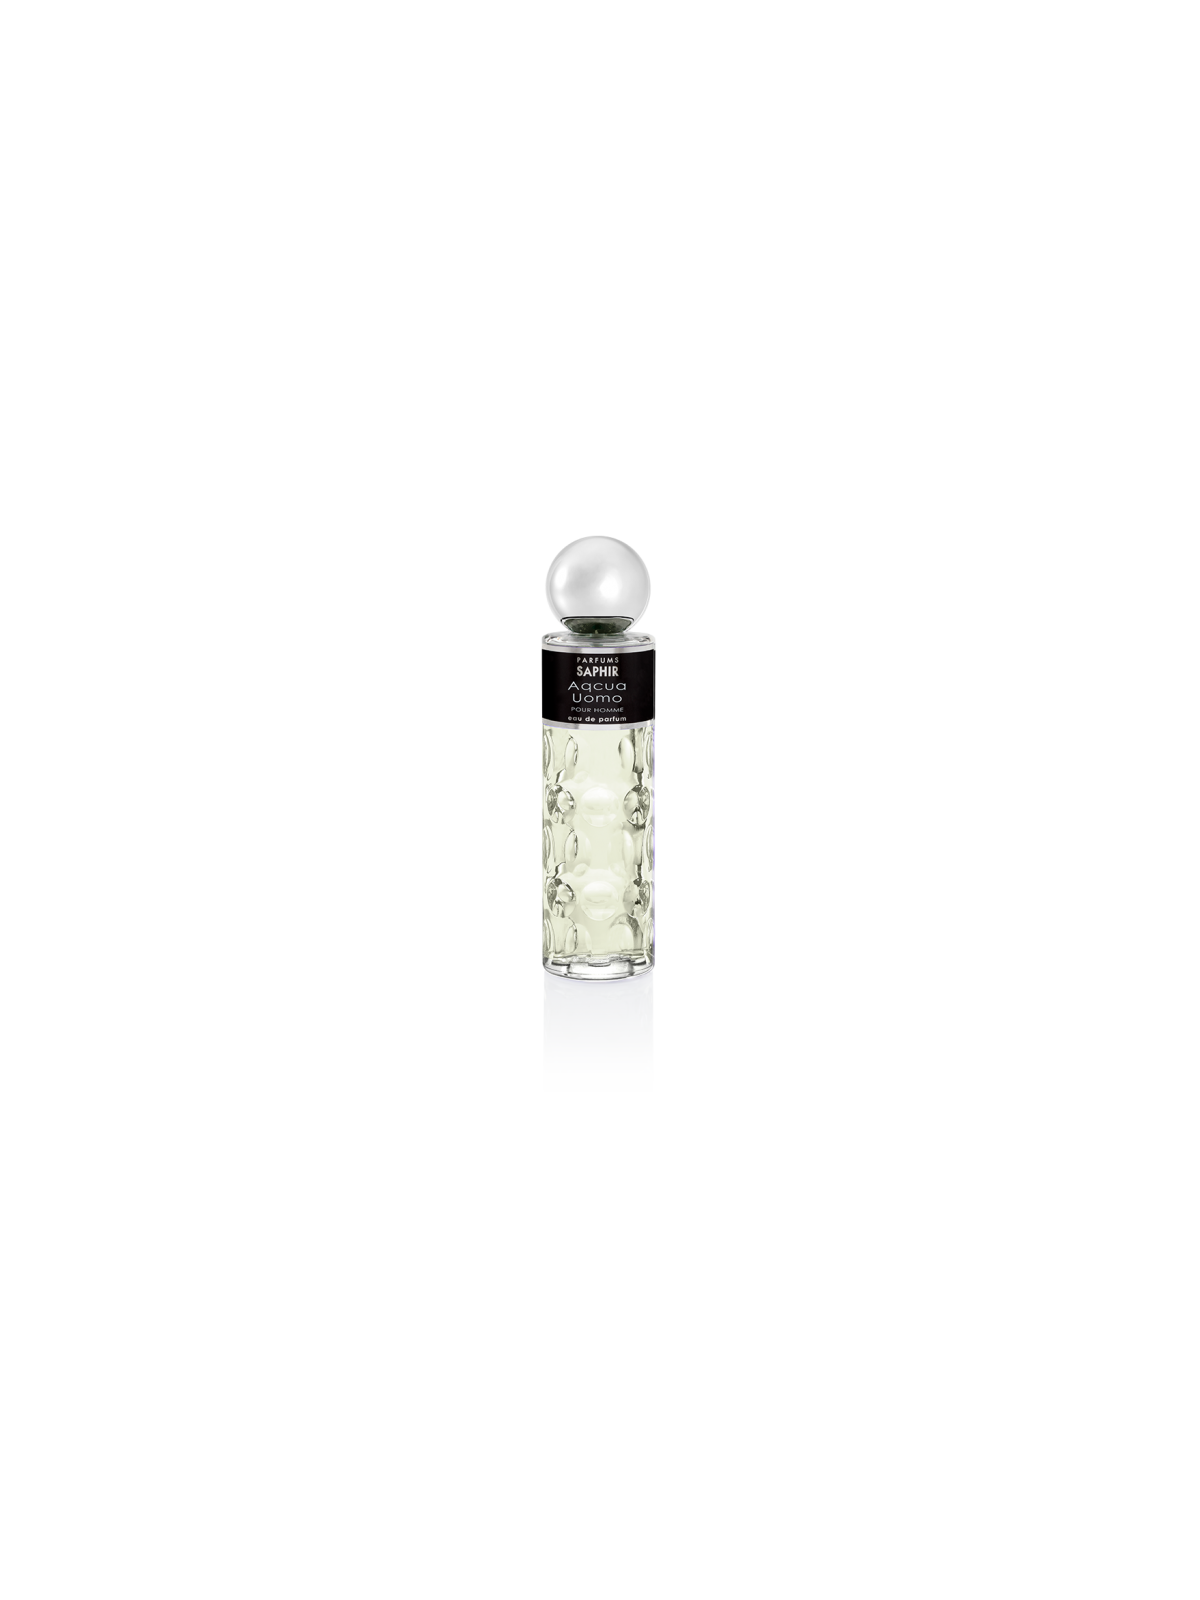 Comprar Perfume Hombre Saphir Acqua Uomo 200ML. en Perfumes para hombre por sólo 12,90 € o un precio específico de 12,90 € en Thalie Care